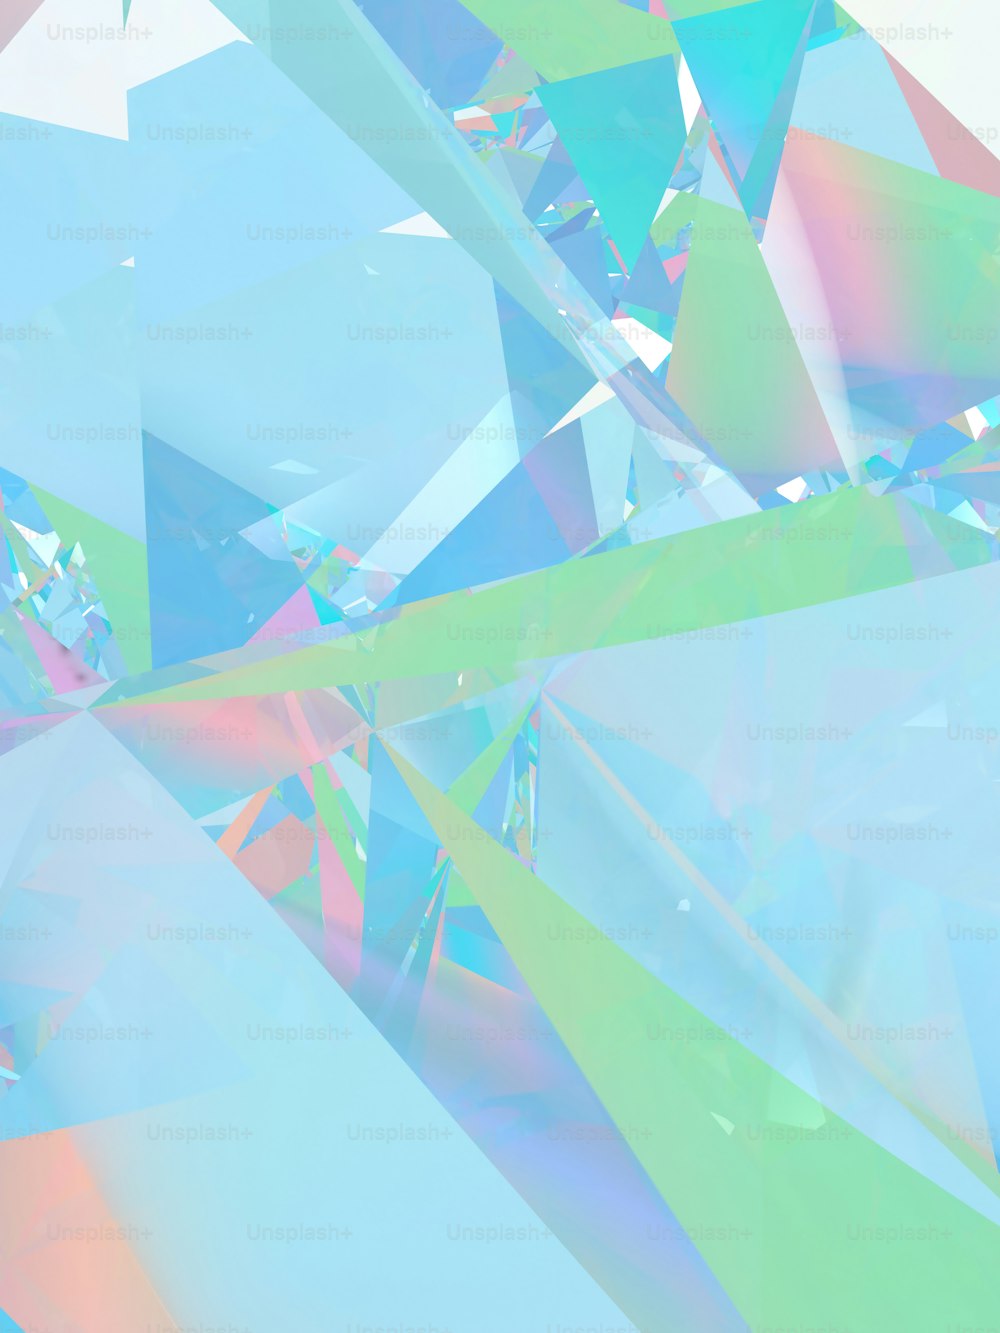 Una imagen multicolor de un objeto similar a un diamante